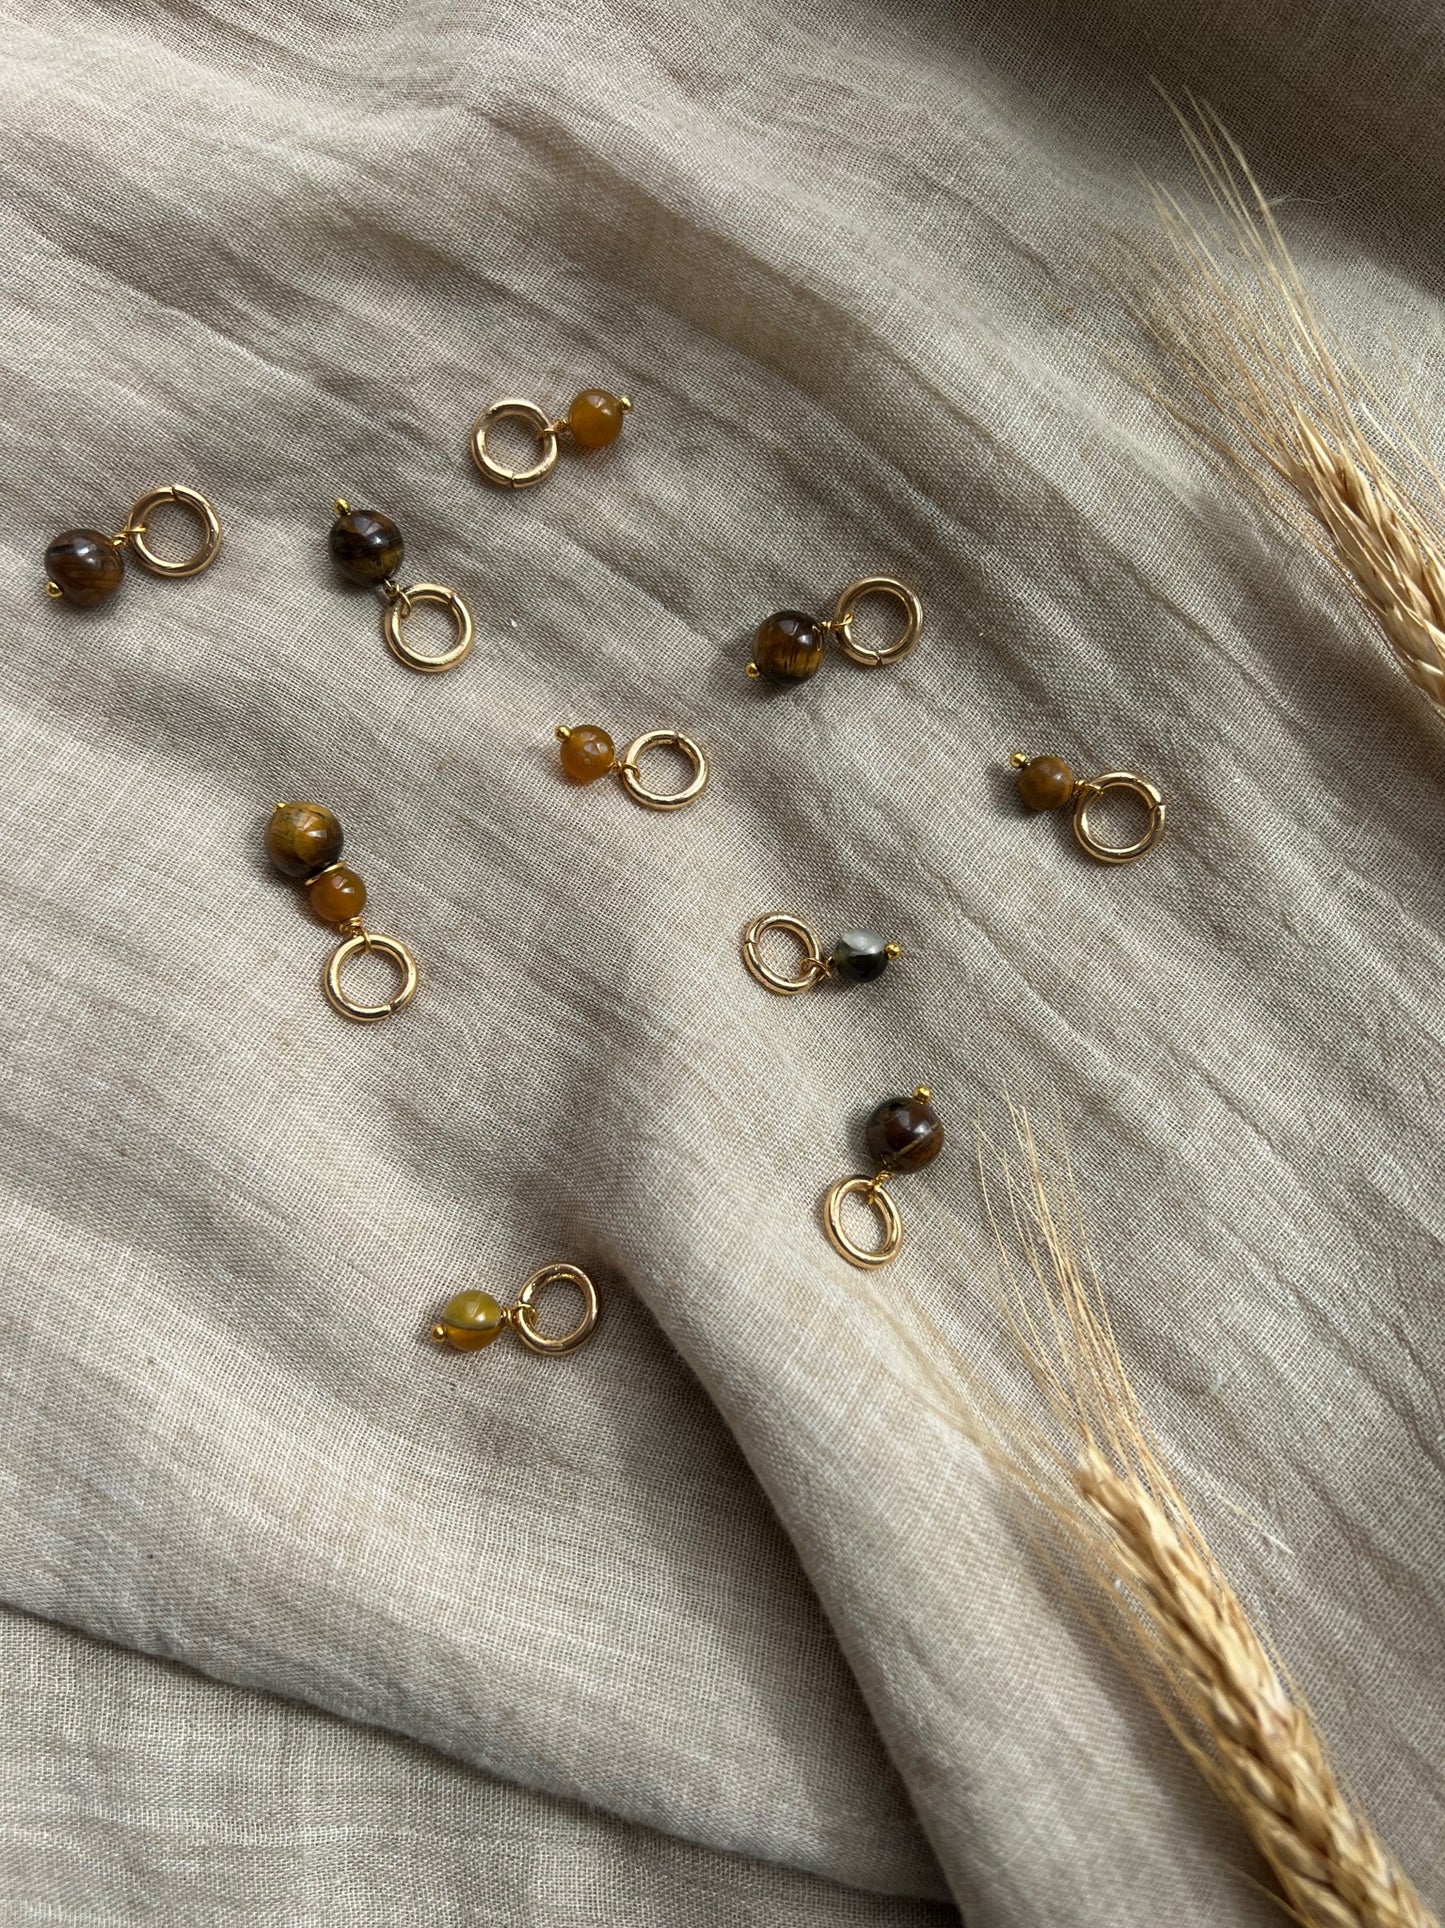 Maskemarkører med perler i mange fine nyanser av brune og gullbelagte ringer